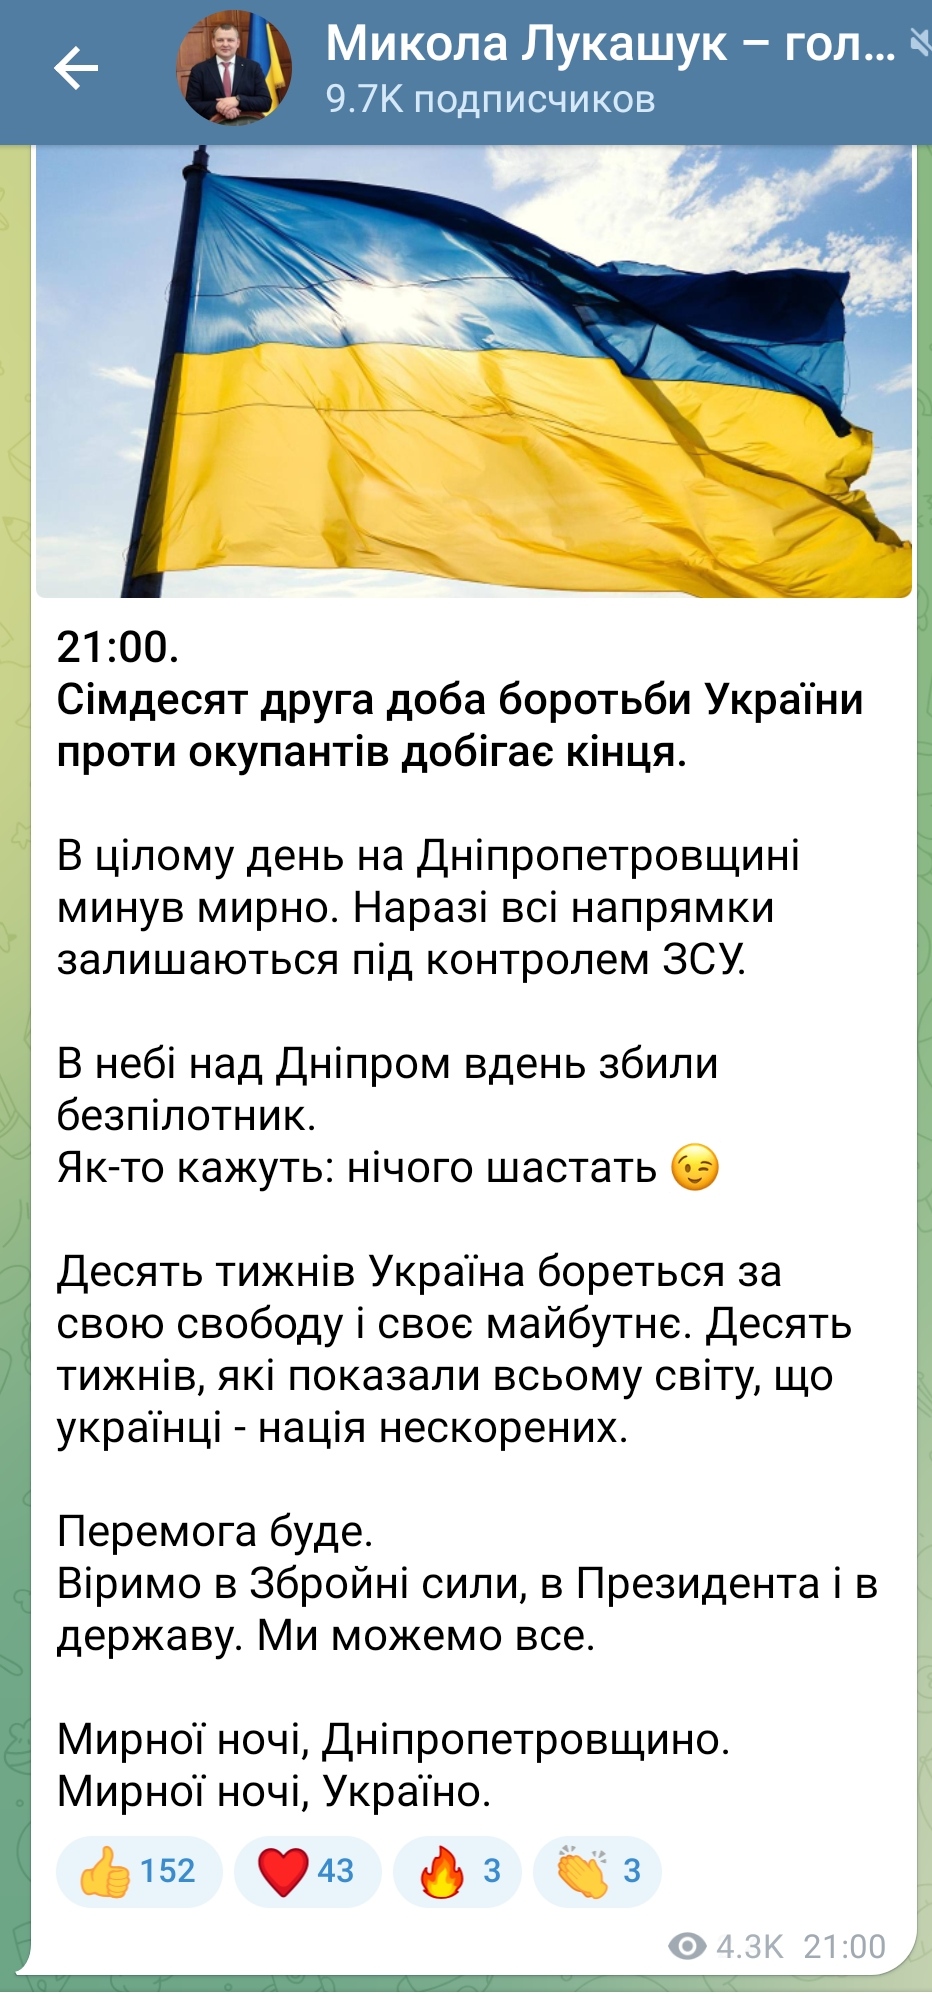 Сьогодні в небі над Дніпром збили безпілотник,- Микола Лукашук про підсумки 72-ої доби для Дніпропетровщини